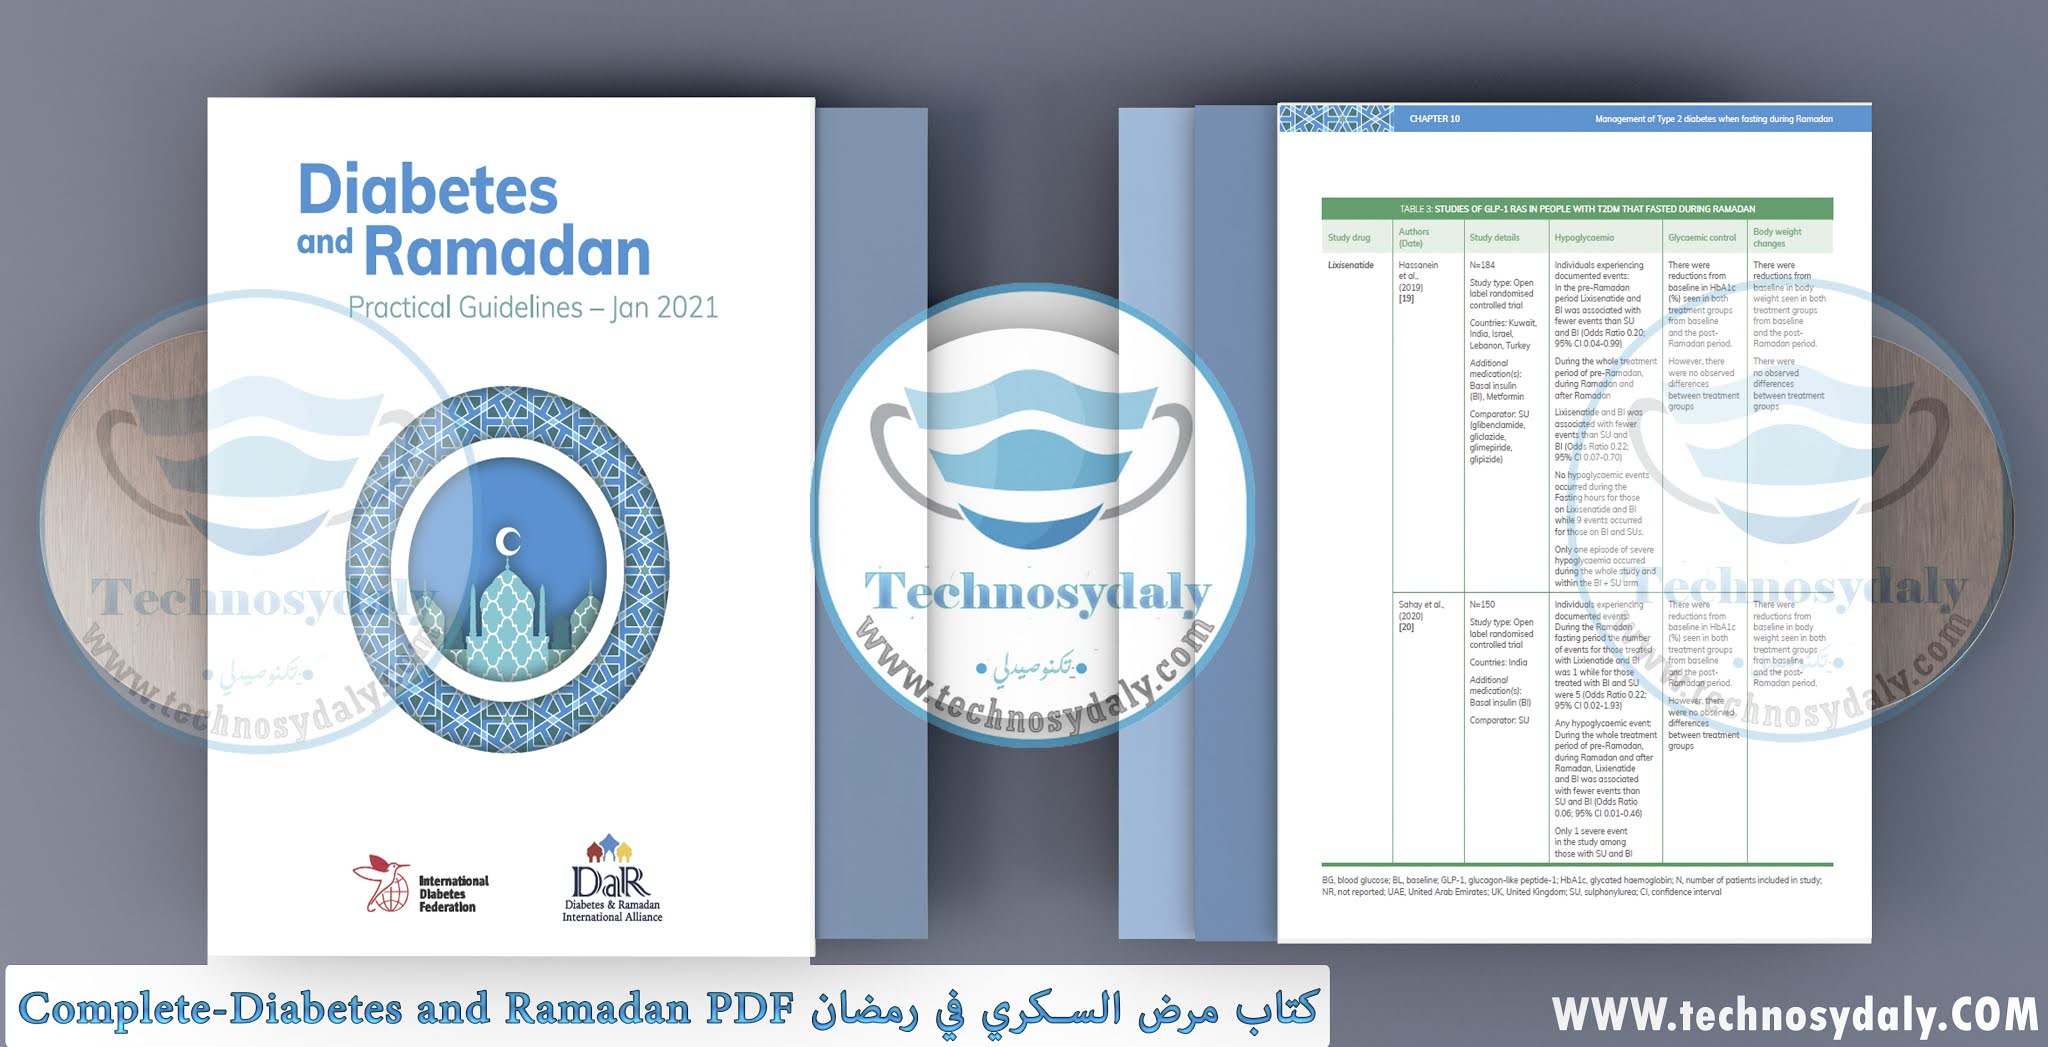 كتاب مرض السكري في رمضان Complete-Diabetes and Ramadan PDF